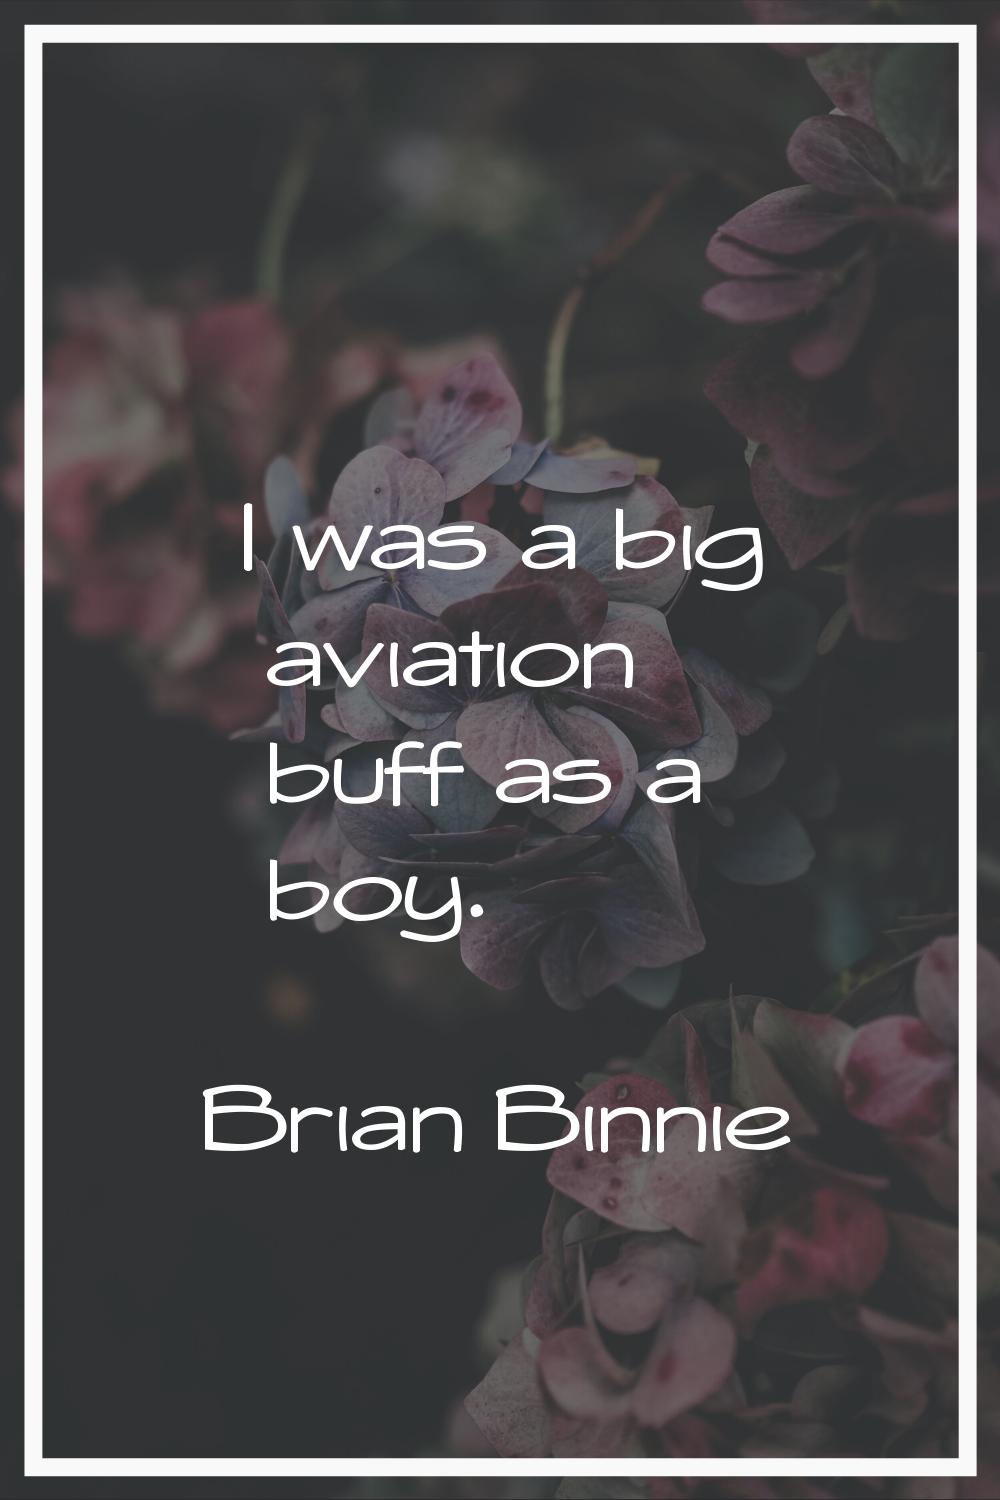 I was a big aviation buff as a boy.